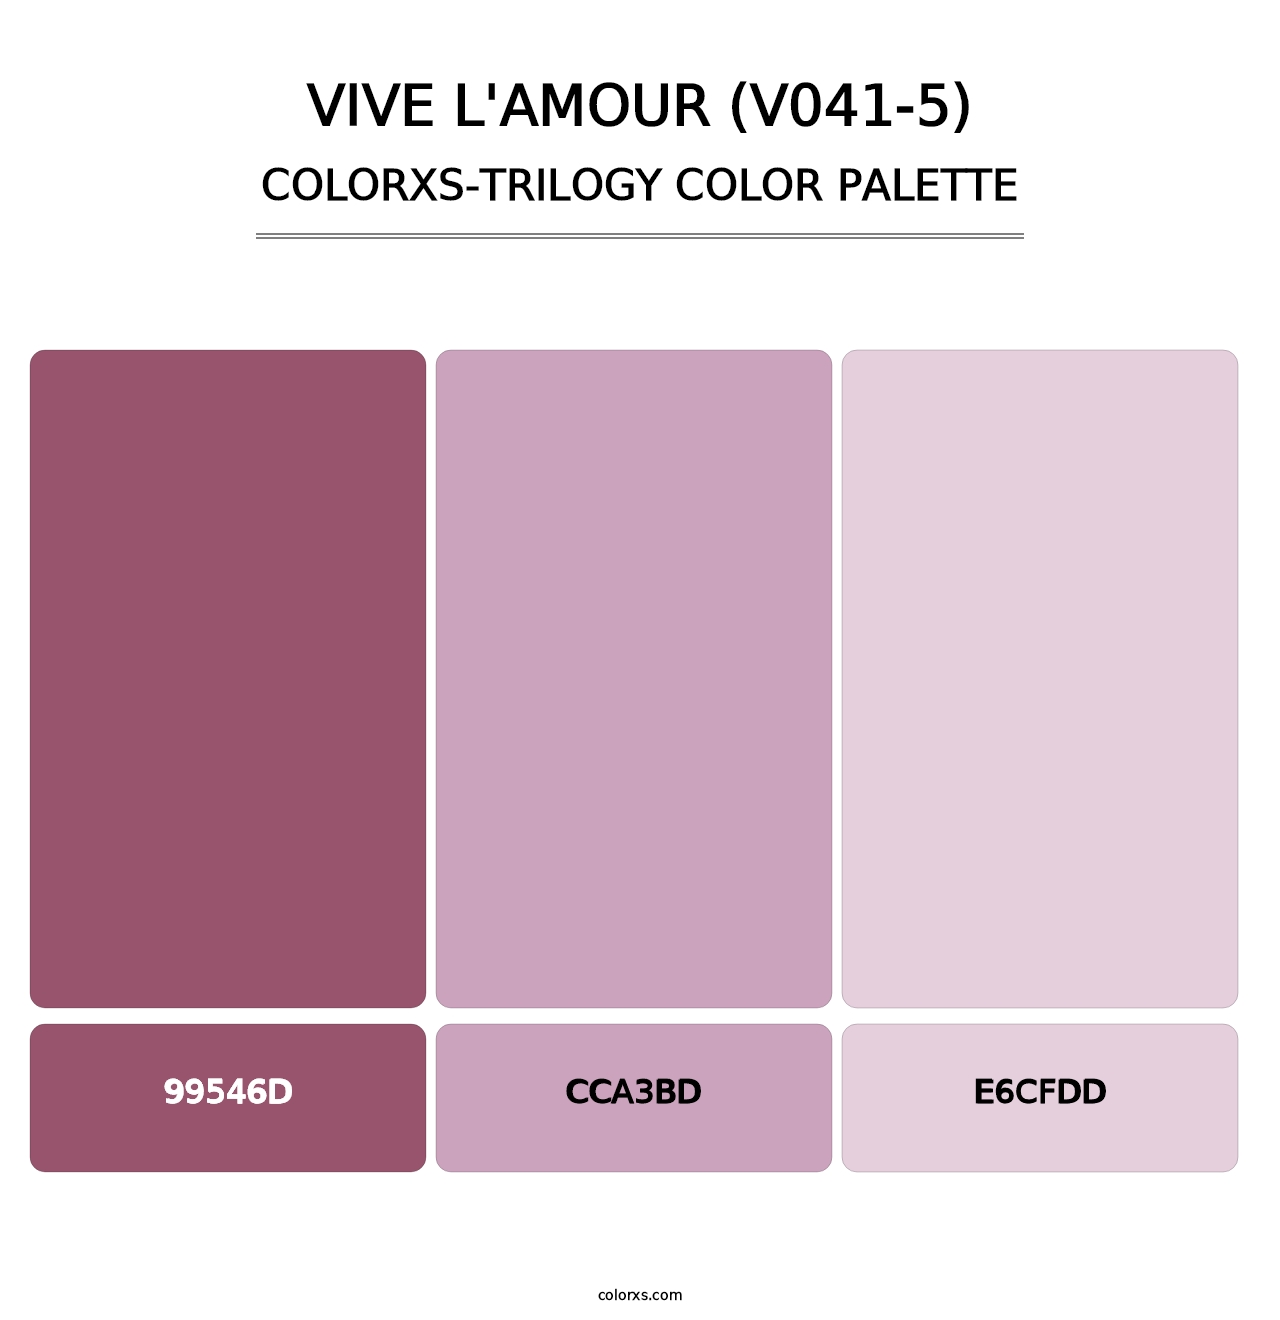 Vive l'amour (V041-5) - Colorxs Trilogy Palette